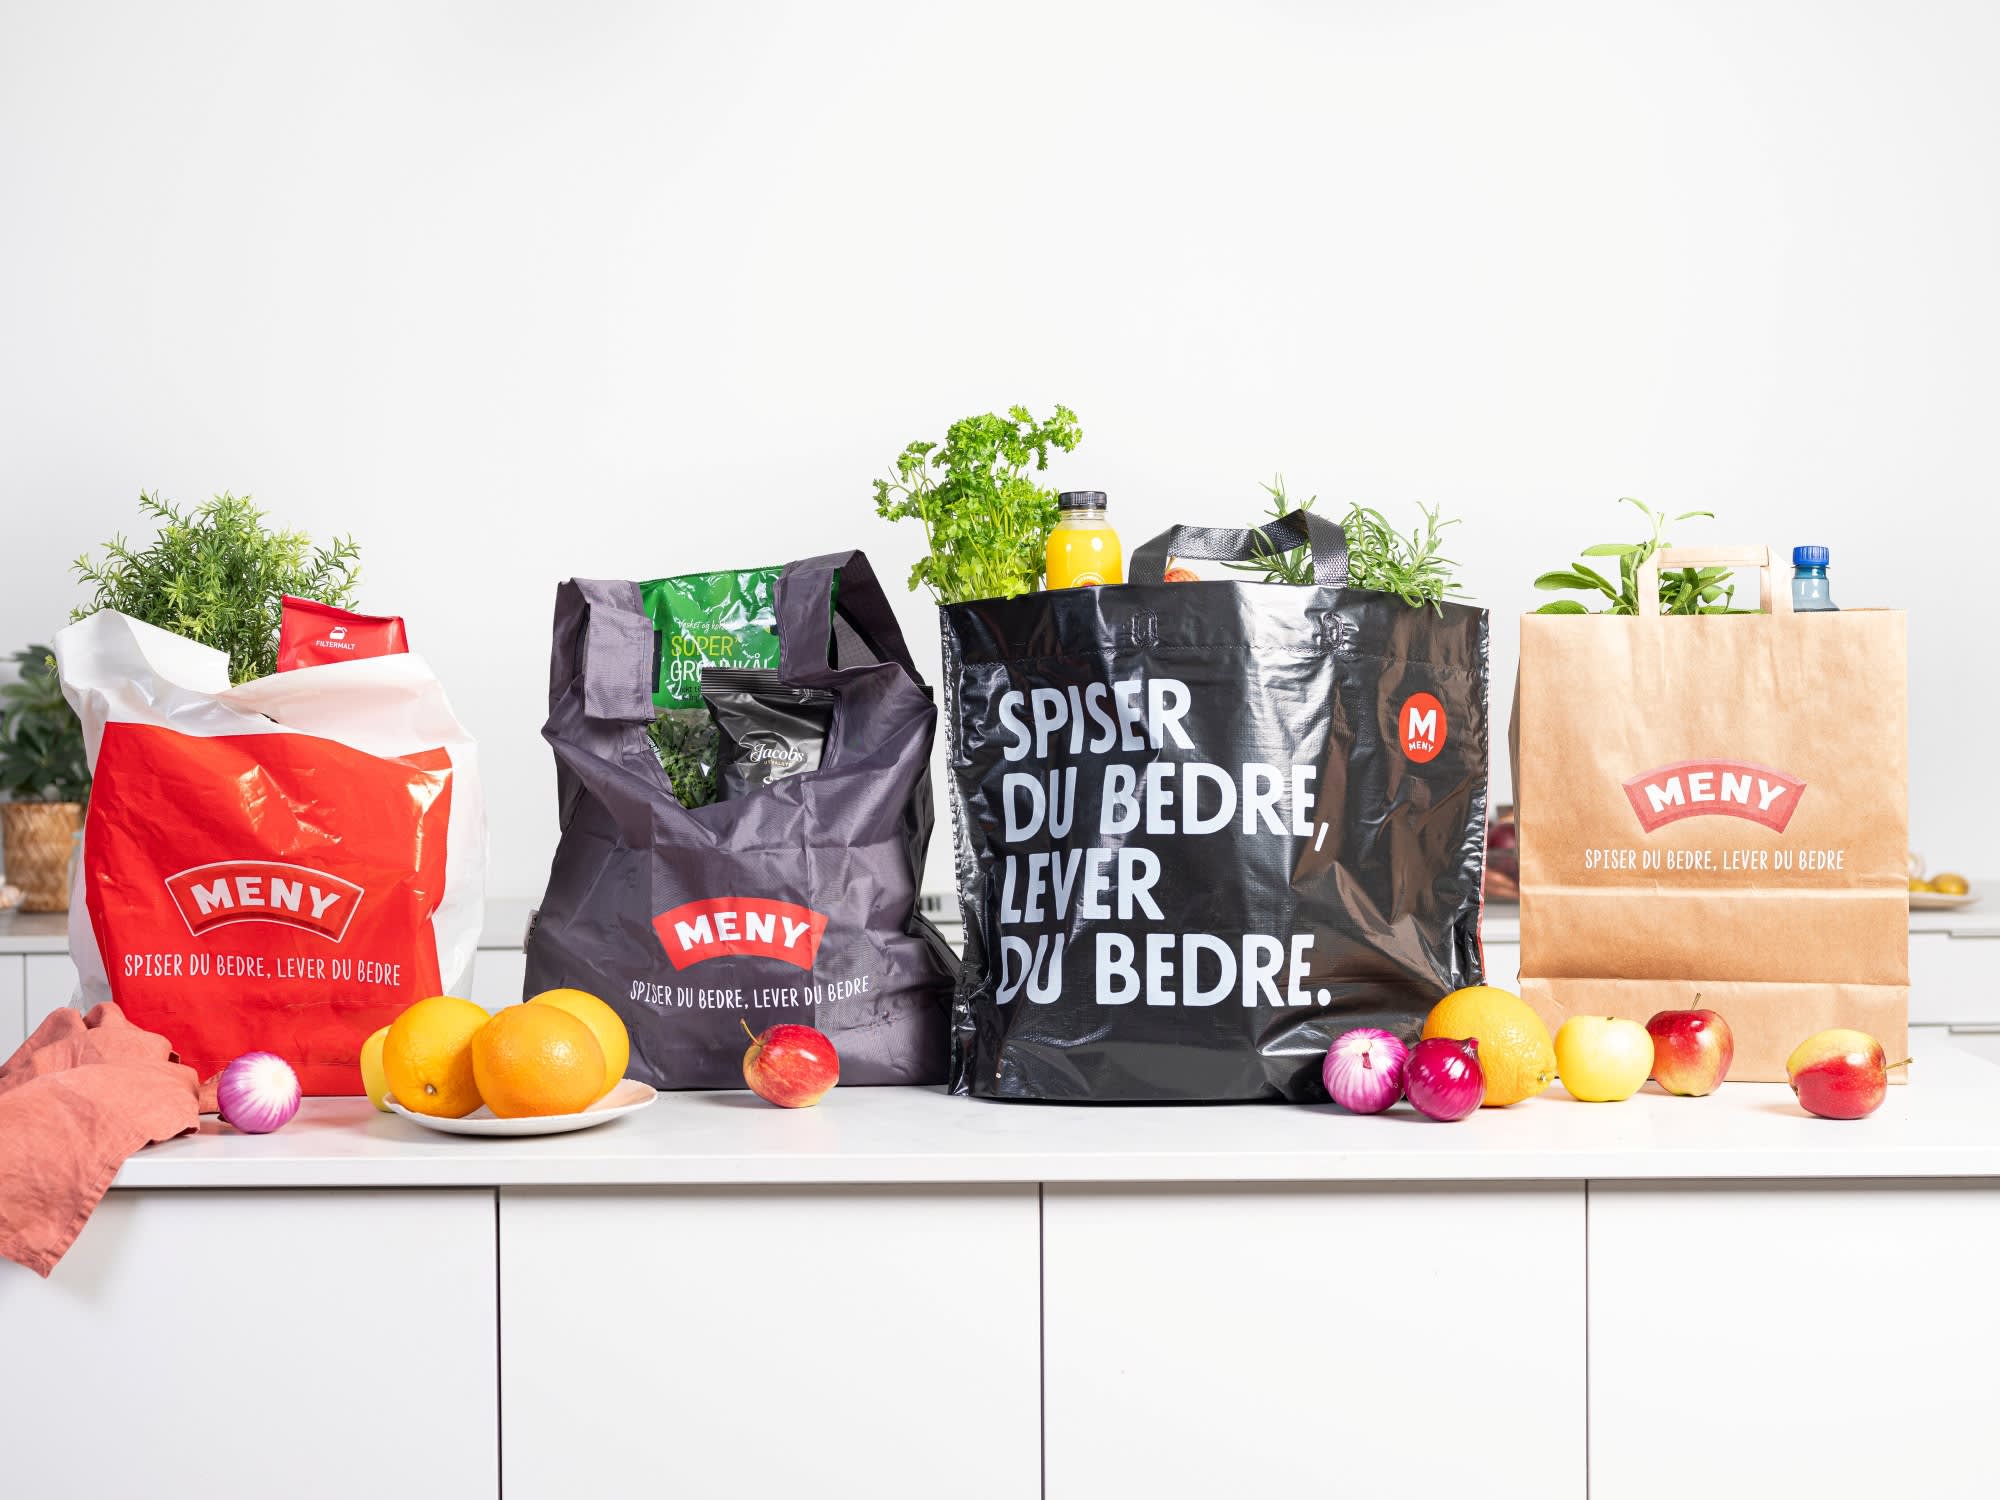 Bærepose - hvilken pose bør du velge i matbutikken? | Meny.no